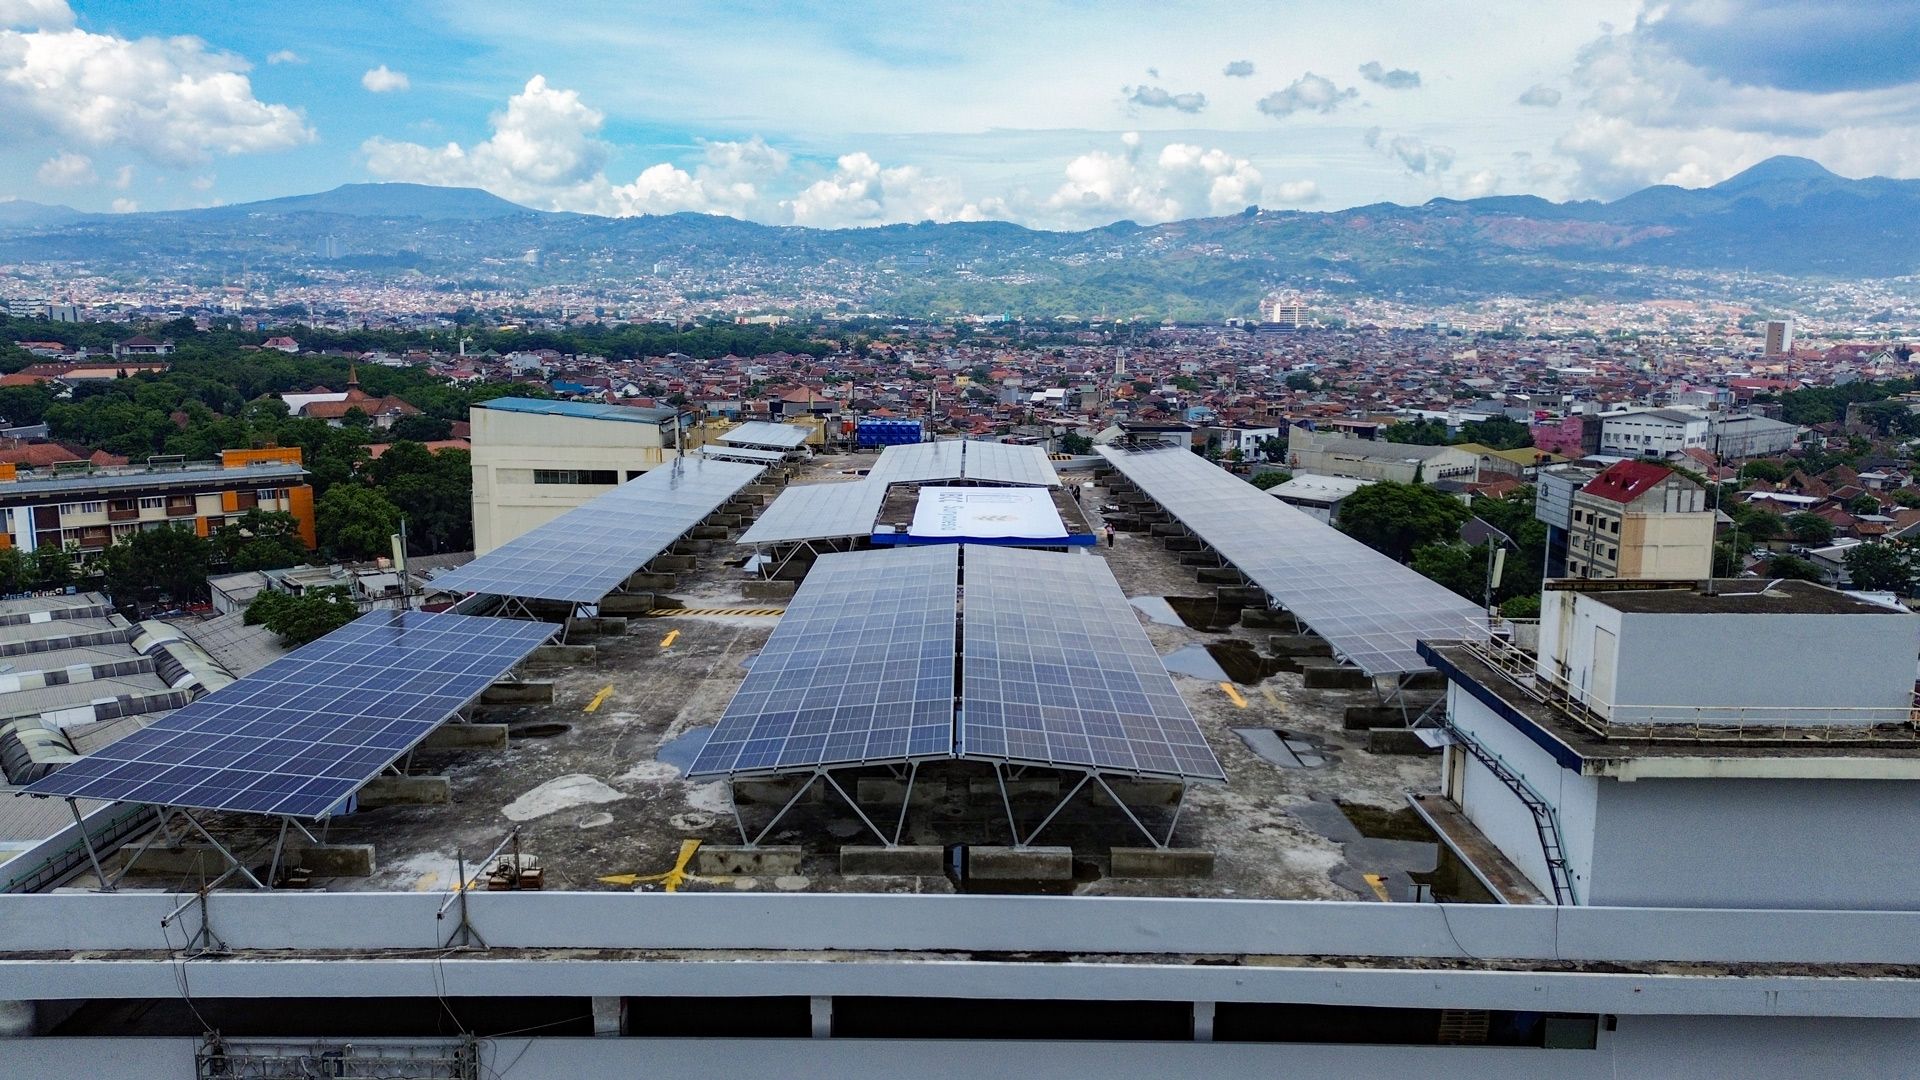 Pusat Perbelanjaan Bandung Manfaatkan Area Parkir untuk Instalasi PLTS Atap